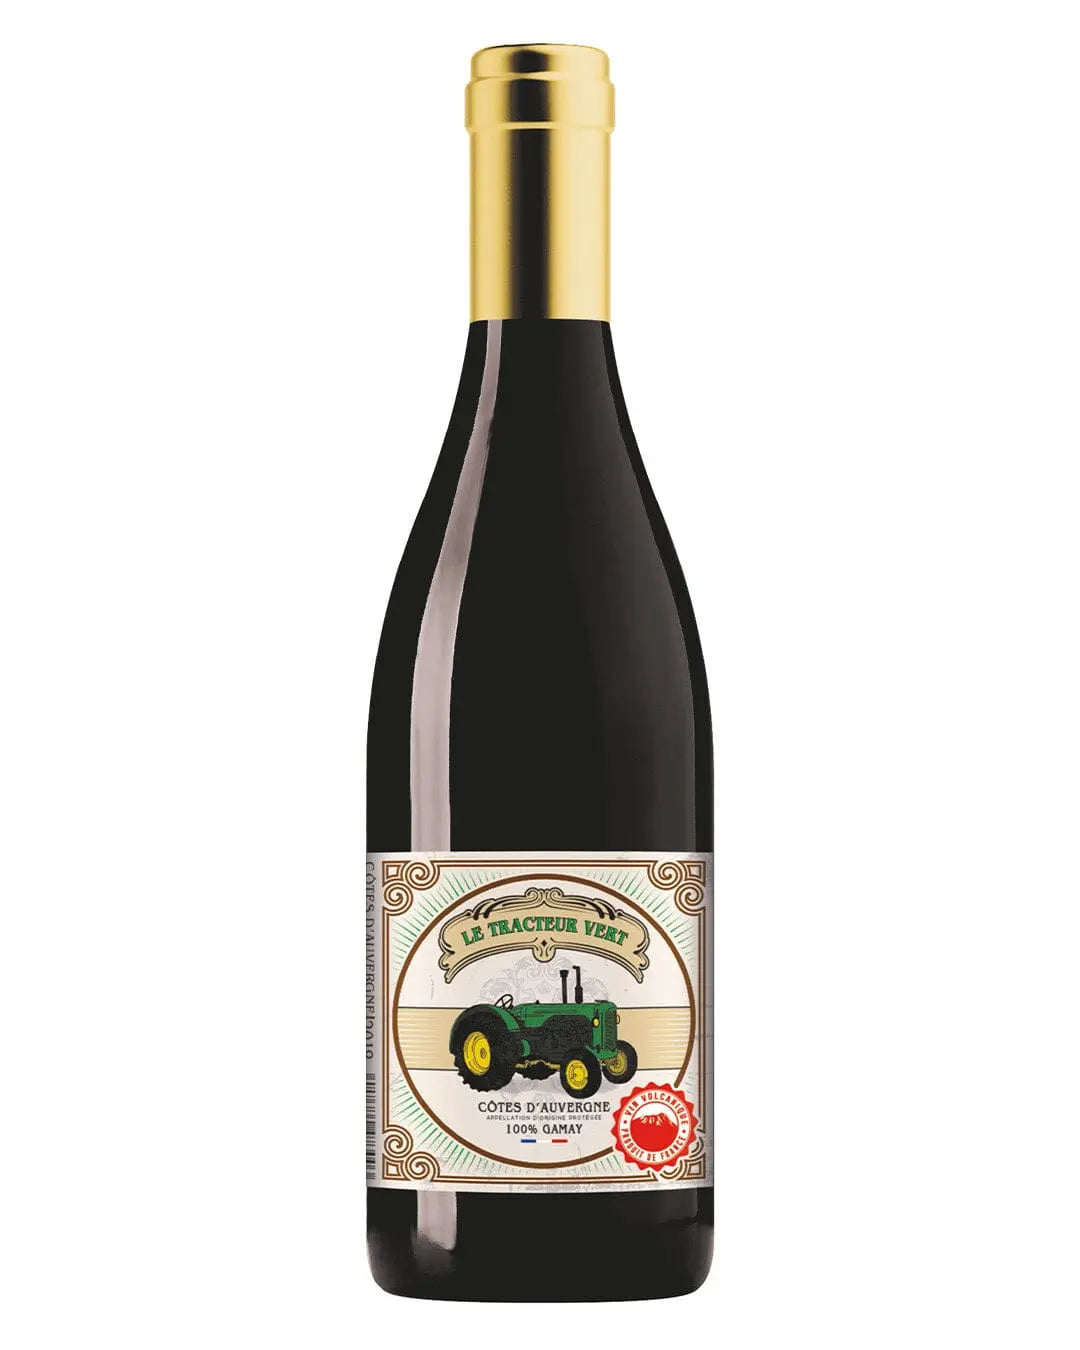 Saint Verny Vignobles Le Tracteur Vert Cotes d'Auvergne Red Wine, 75 cl Red Wine